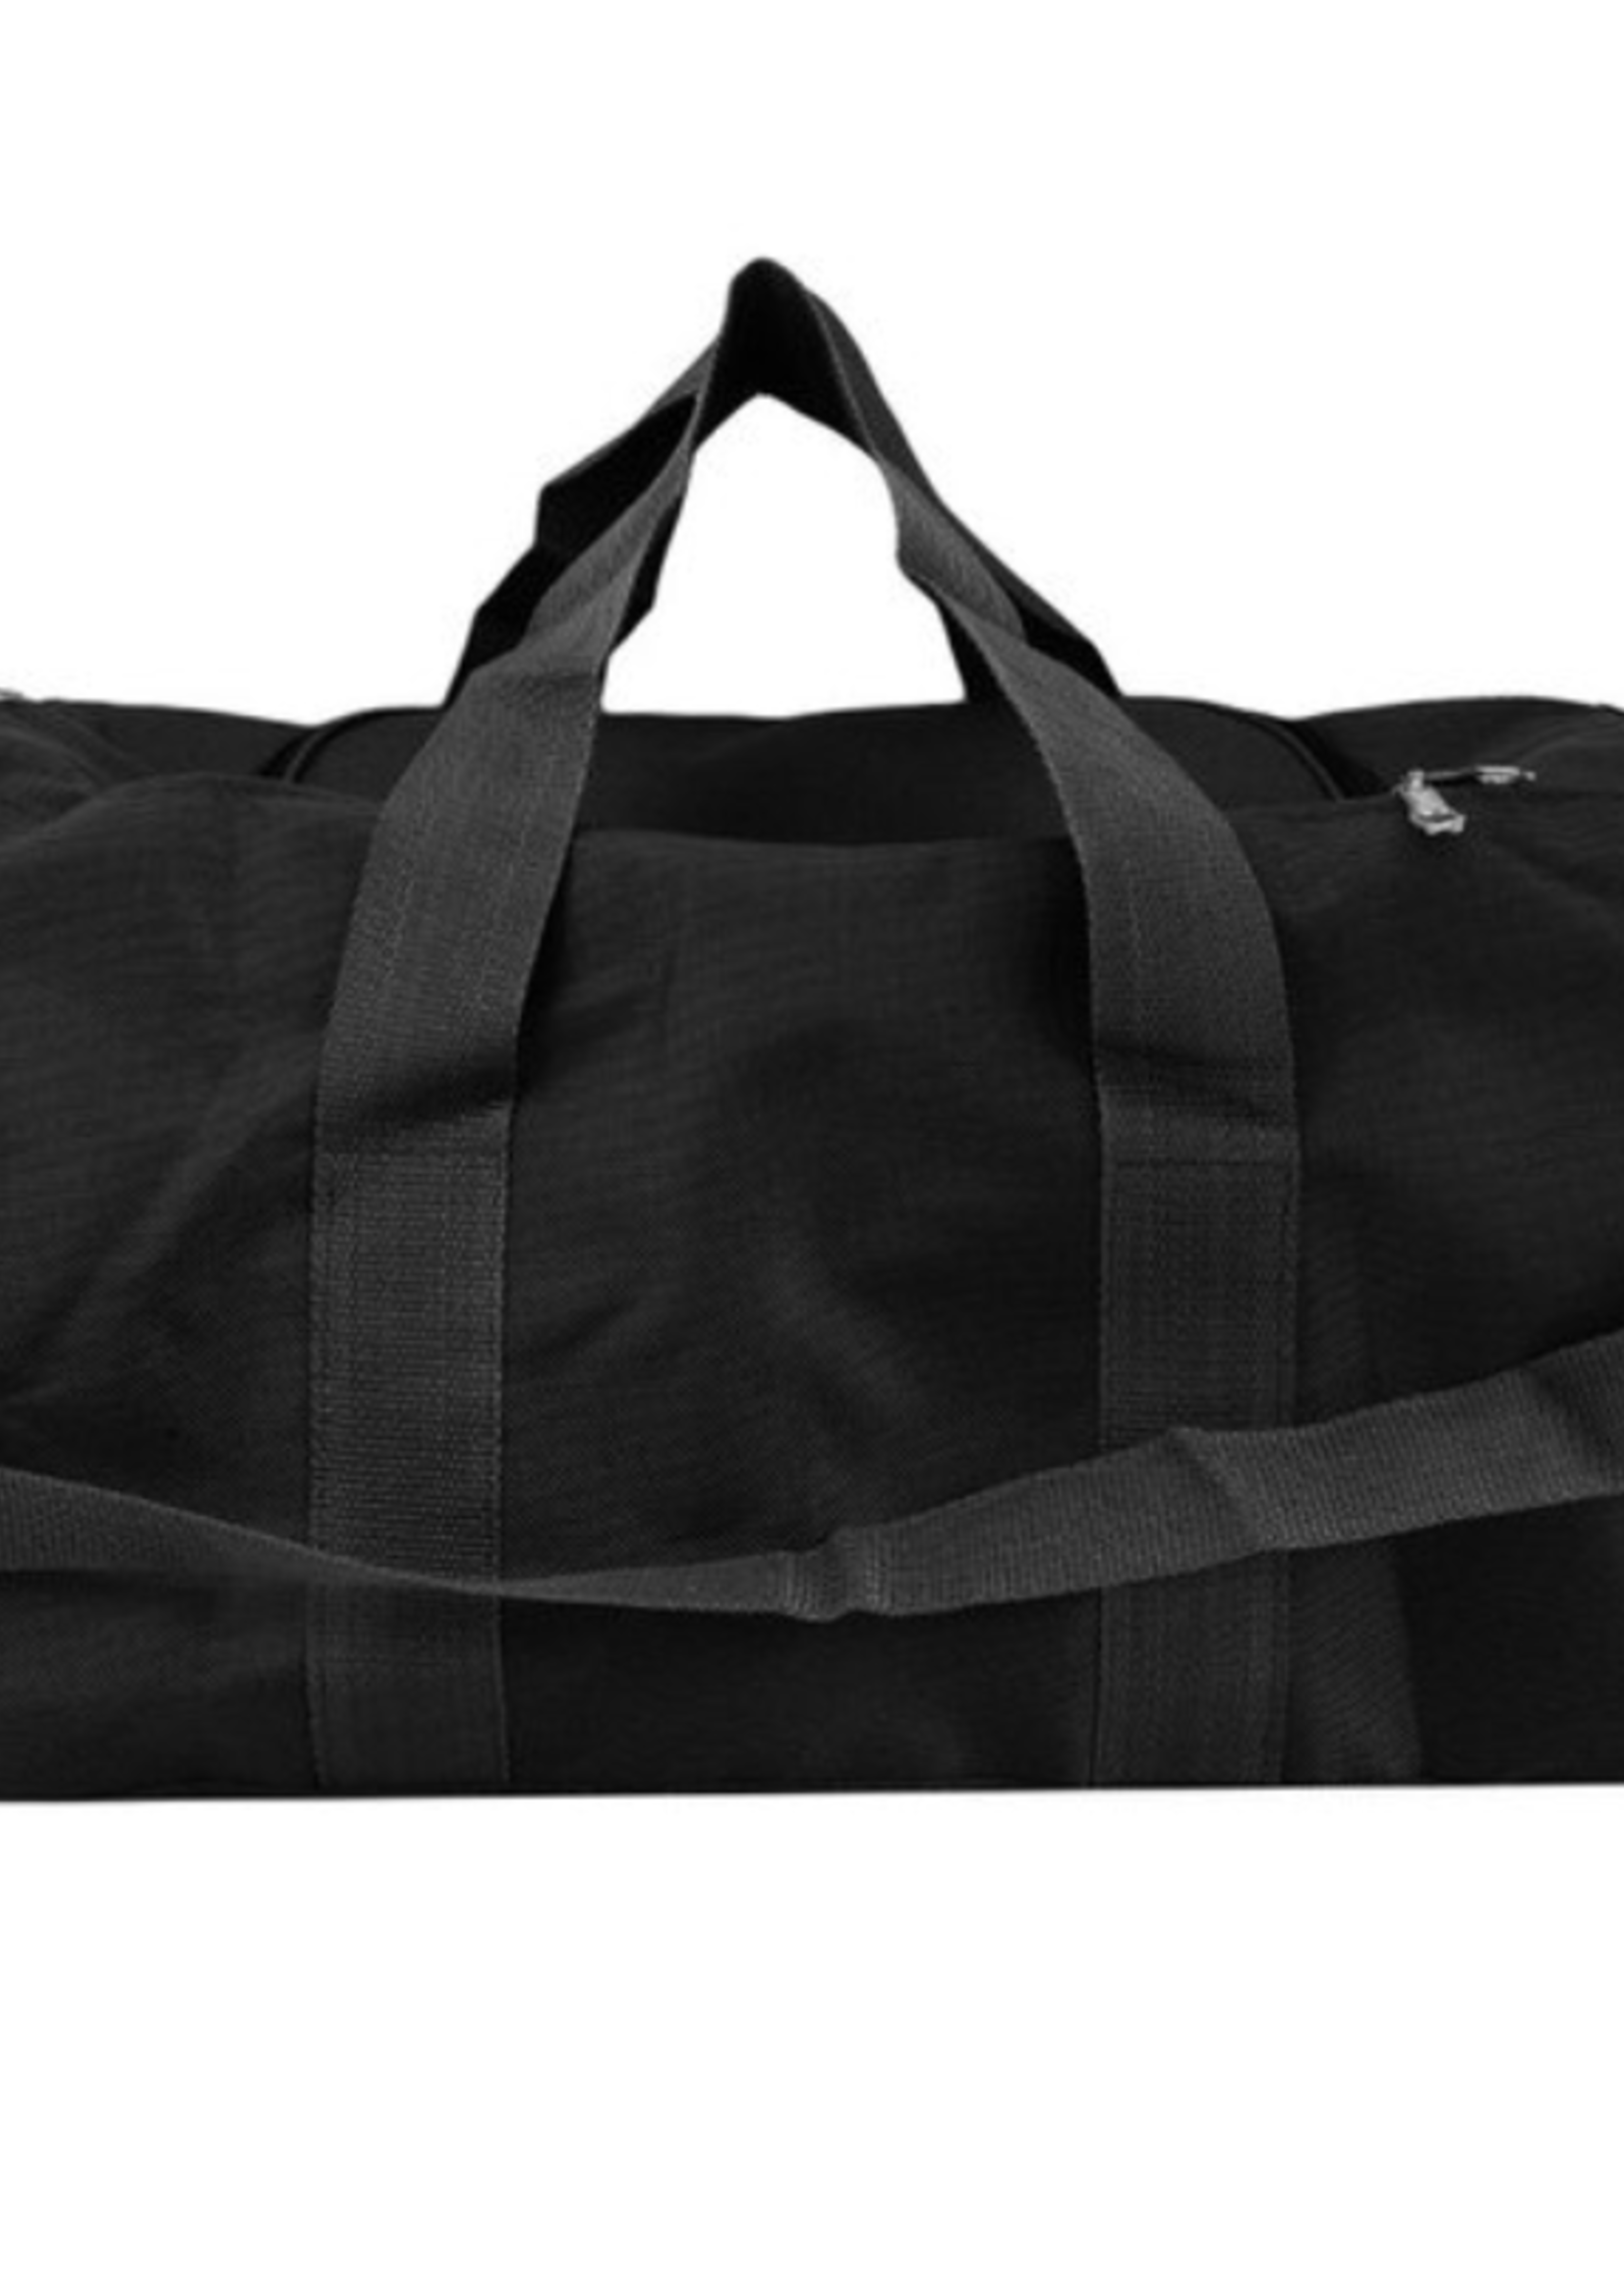 Ali Black Tote Duffle Bag